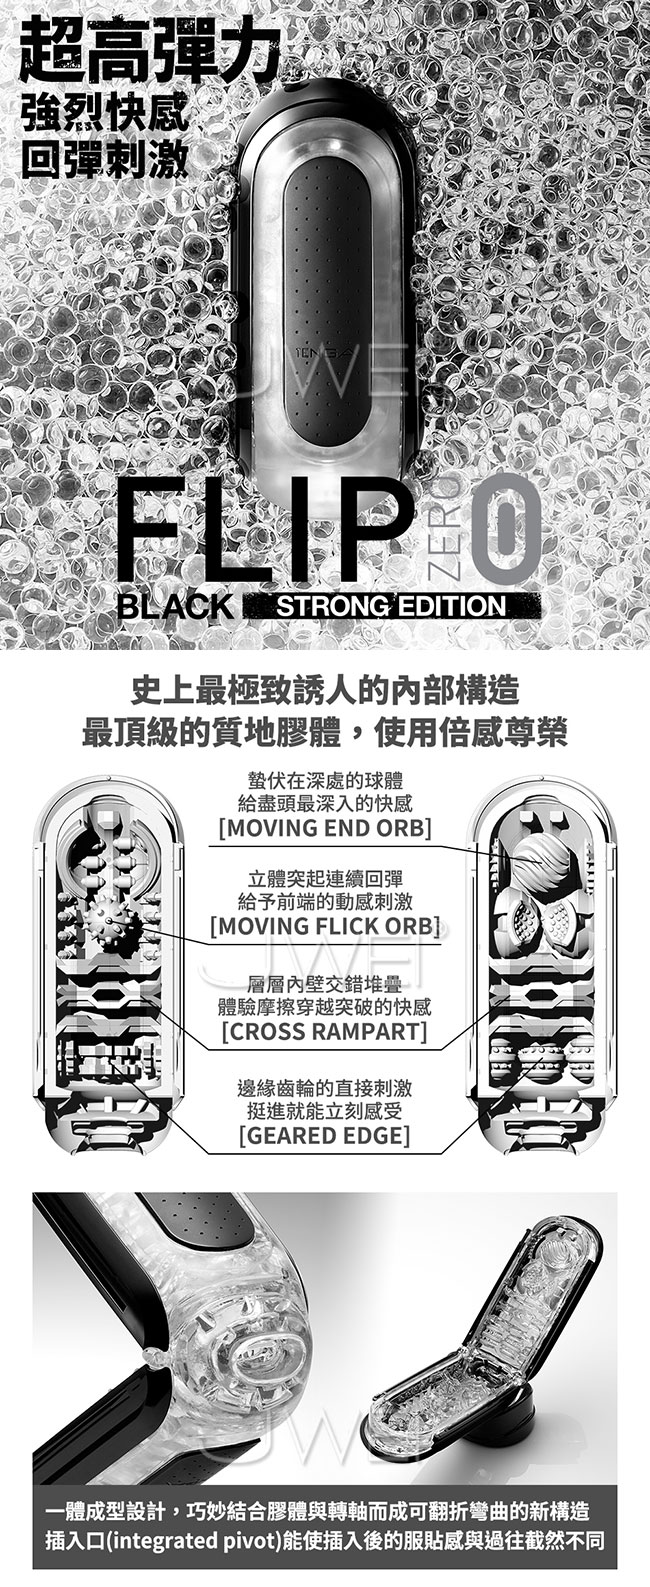 日本 TENGA‧FLIP zero BLACK 太空科技感旗艦飛機杯(高彈款)